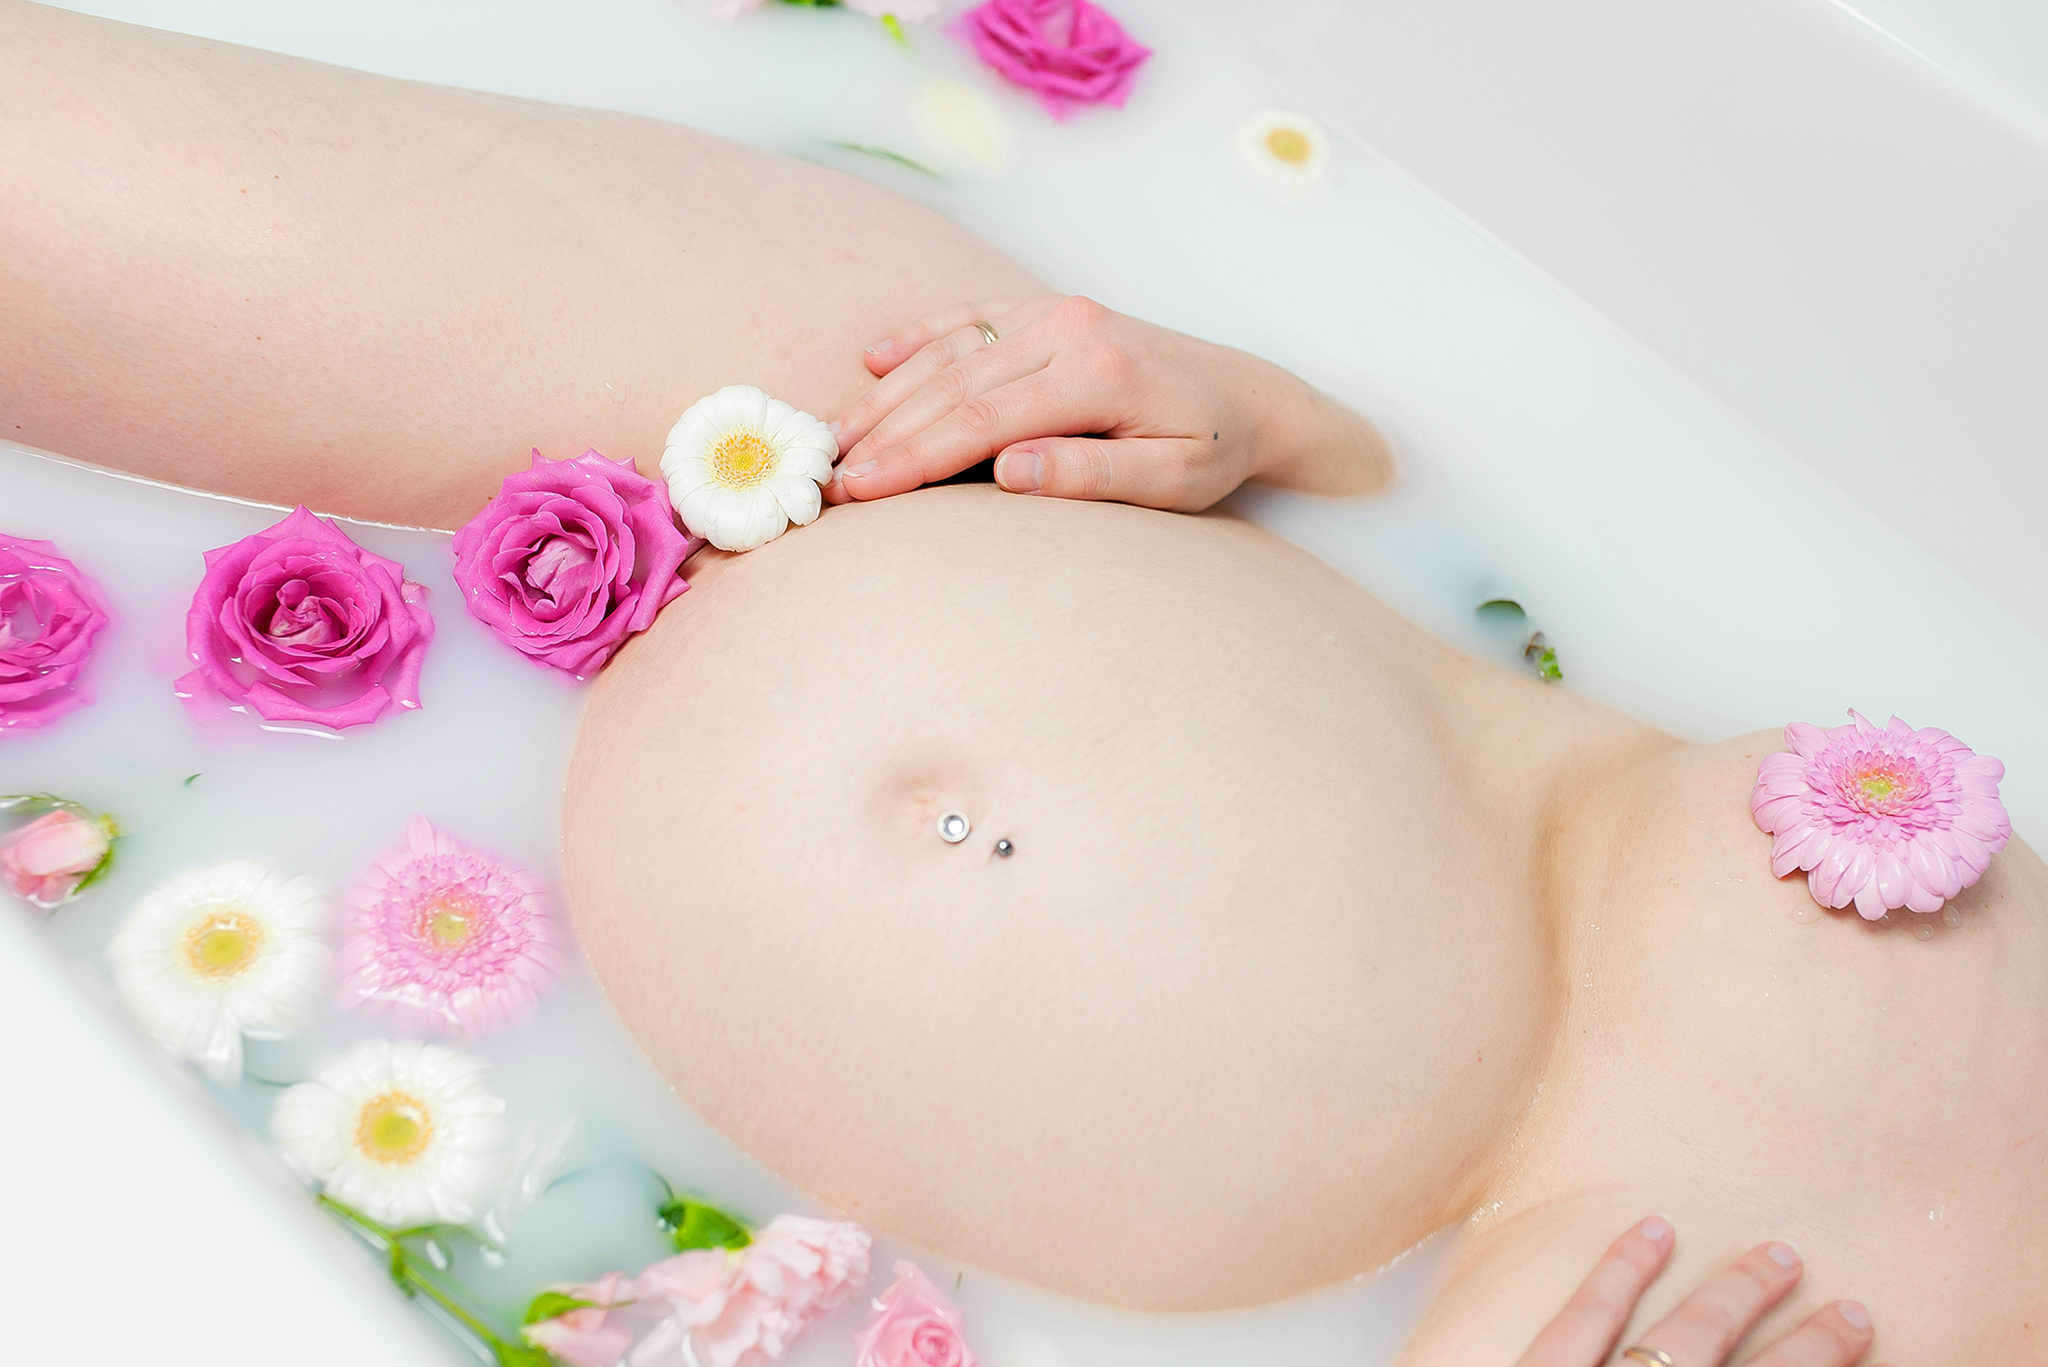 Photographe femme enceinte grossesse bain de lait ventre rond Nantes